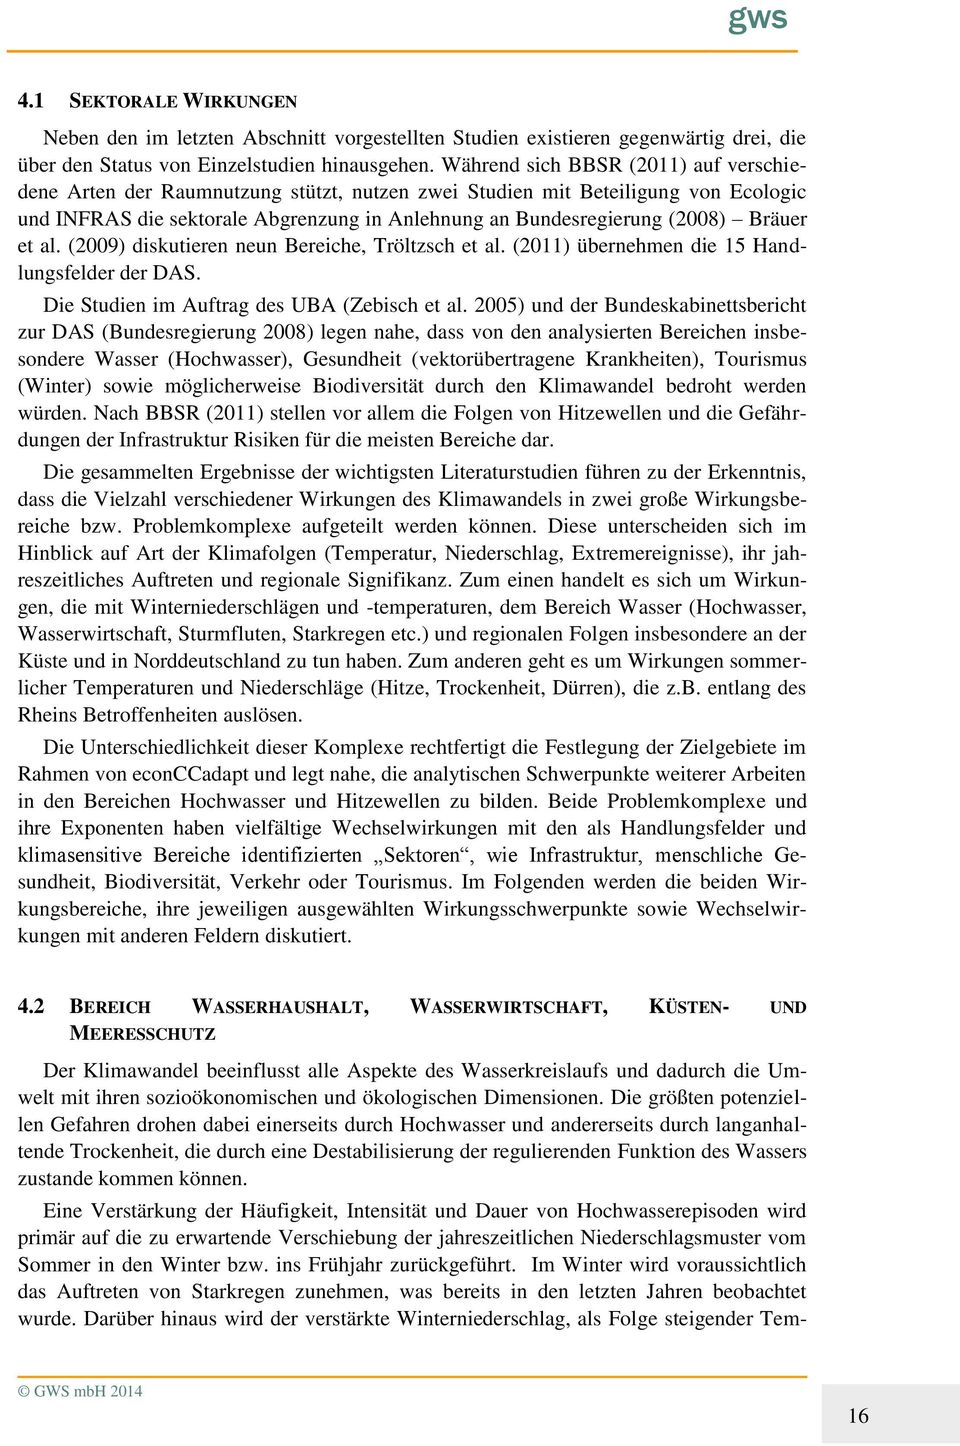 Bräuer et al. (2009) diskutieren neun Bereiche, Tröltzsch et al. (2011) übernehmen die 15 Handlungsfelder der DAS. Die Studien im Auftrag des UBA (Zebisch et al.